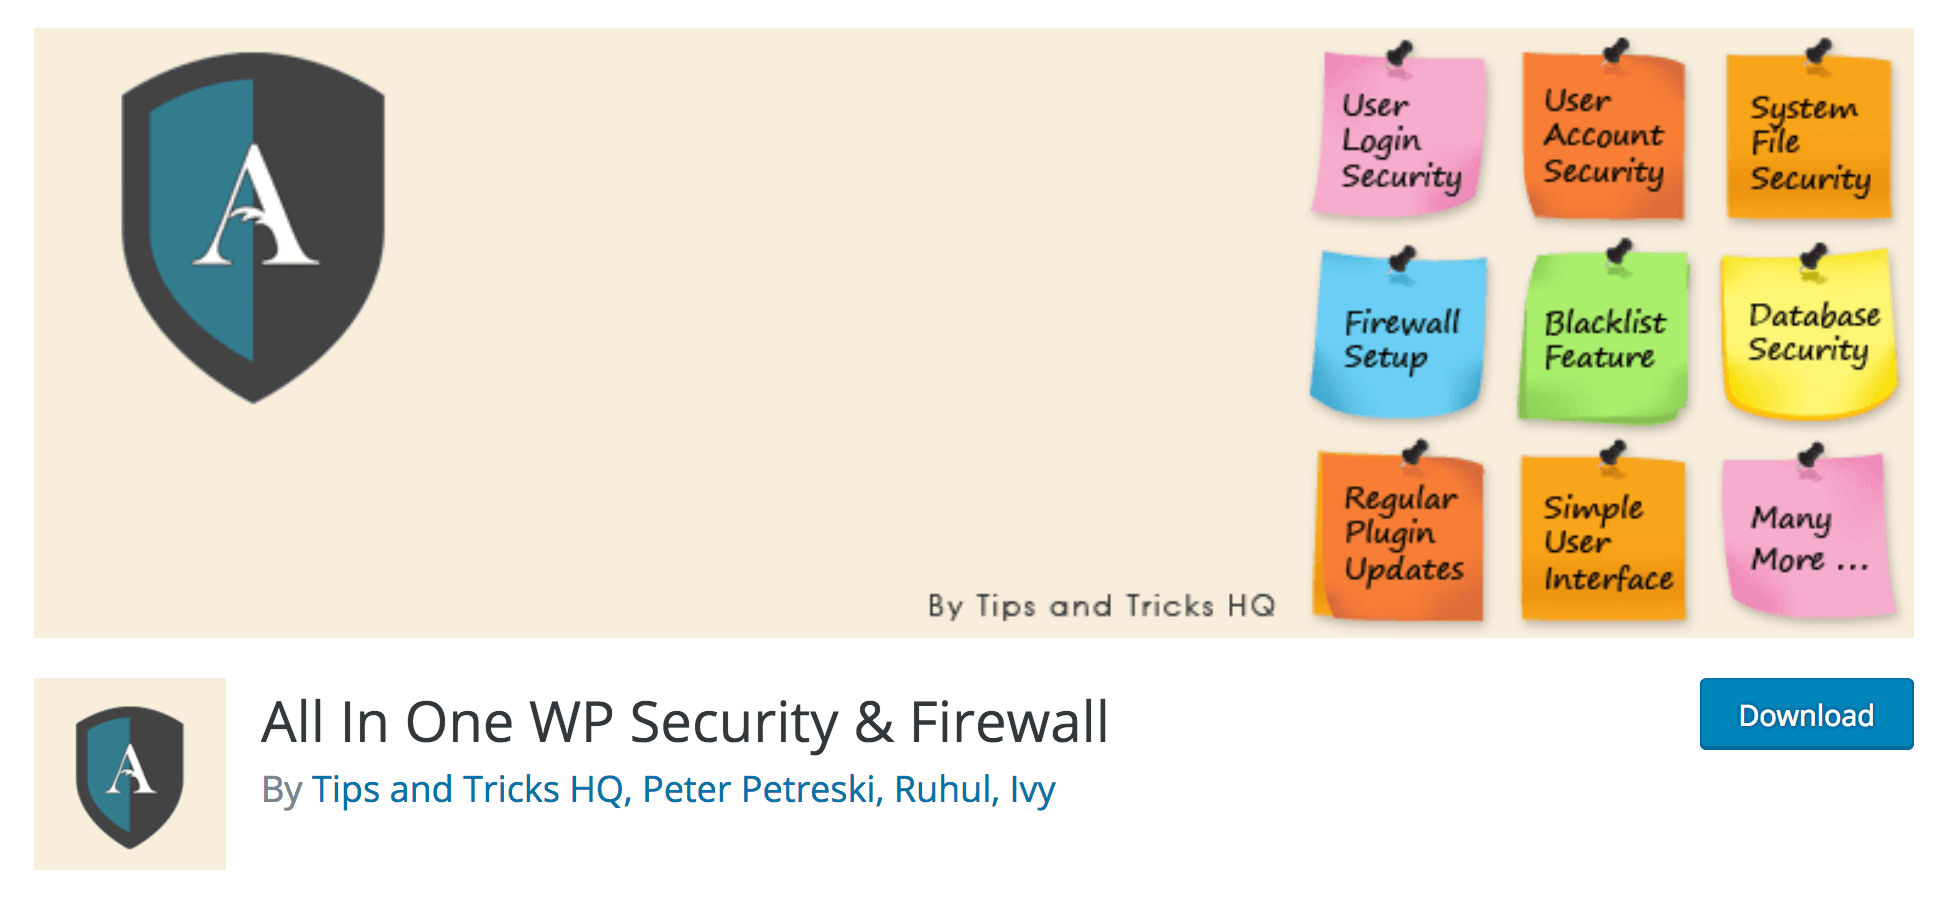 Das All-in-One Sicherheits- und Firewall-Plugin.